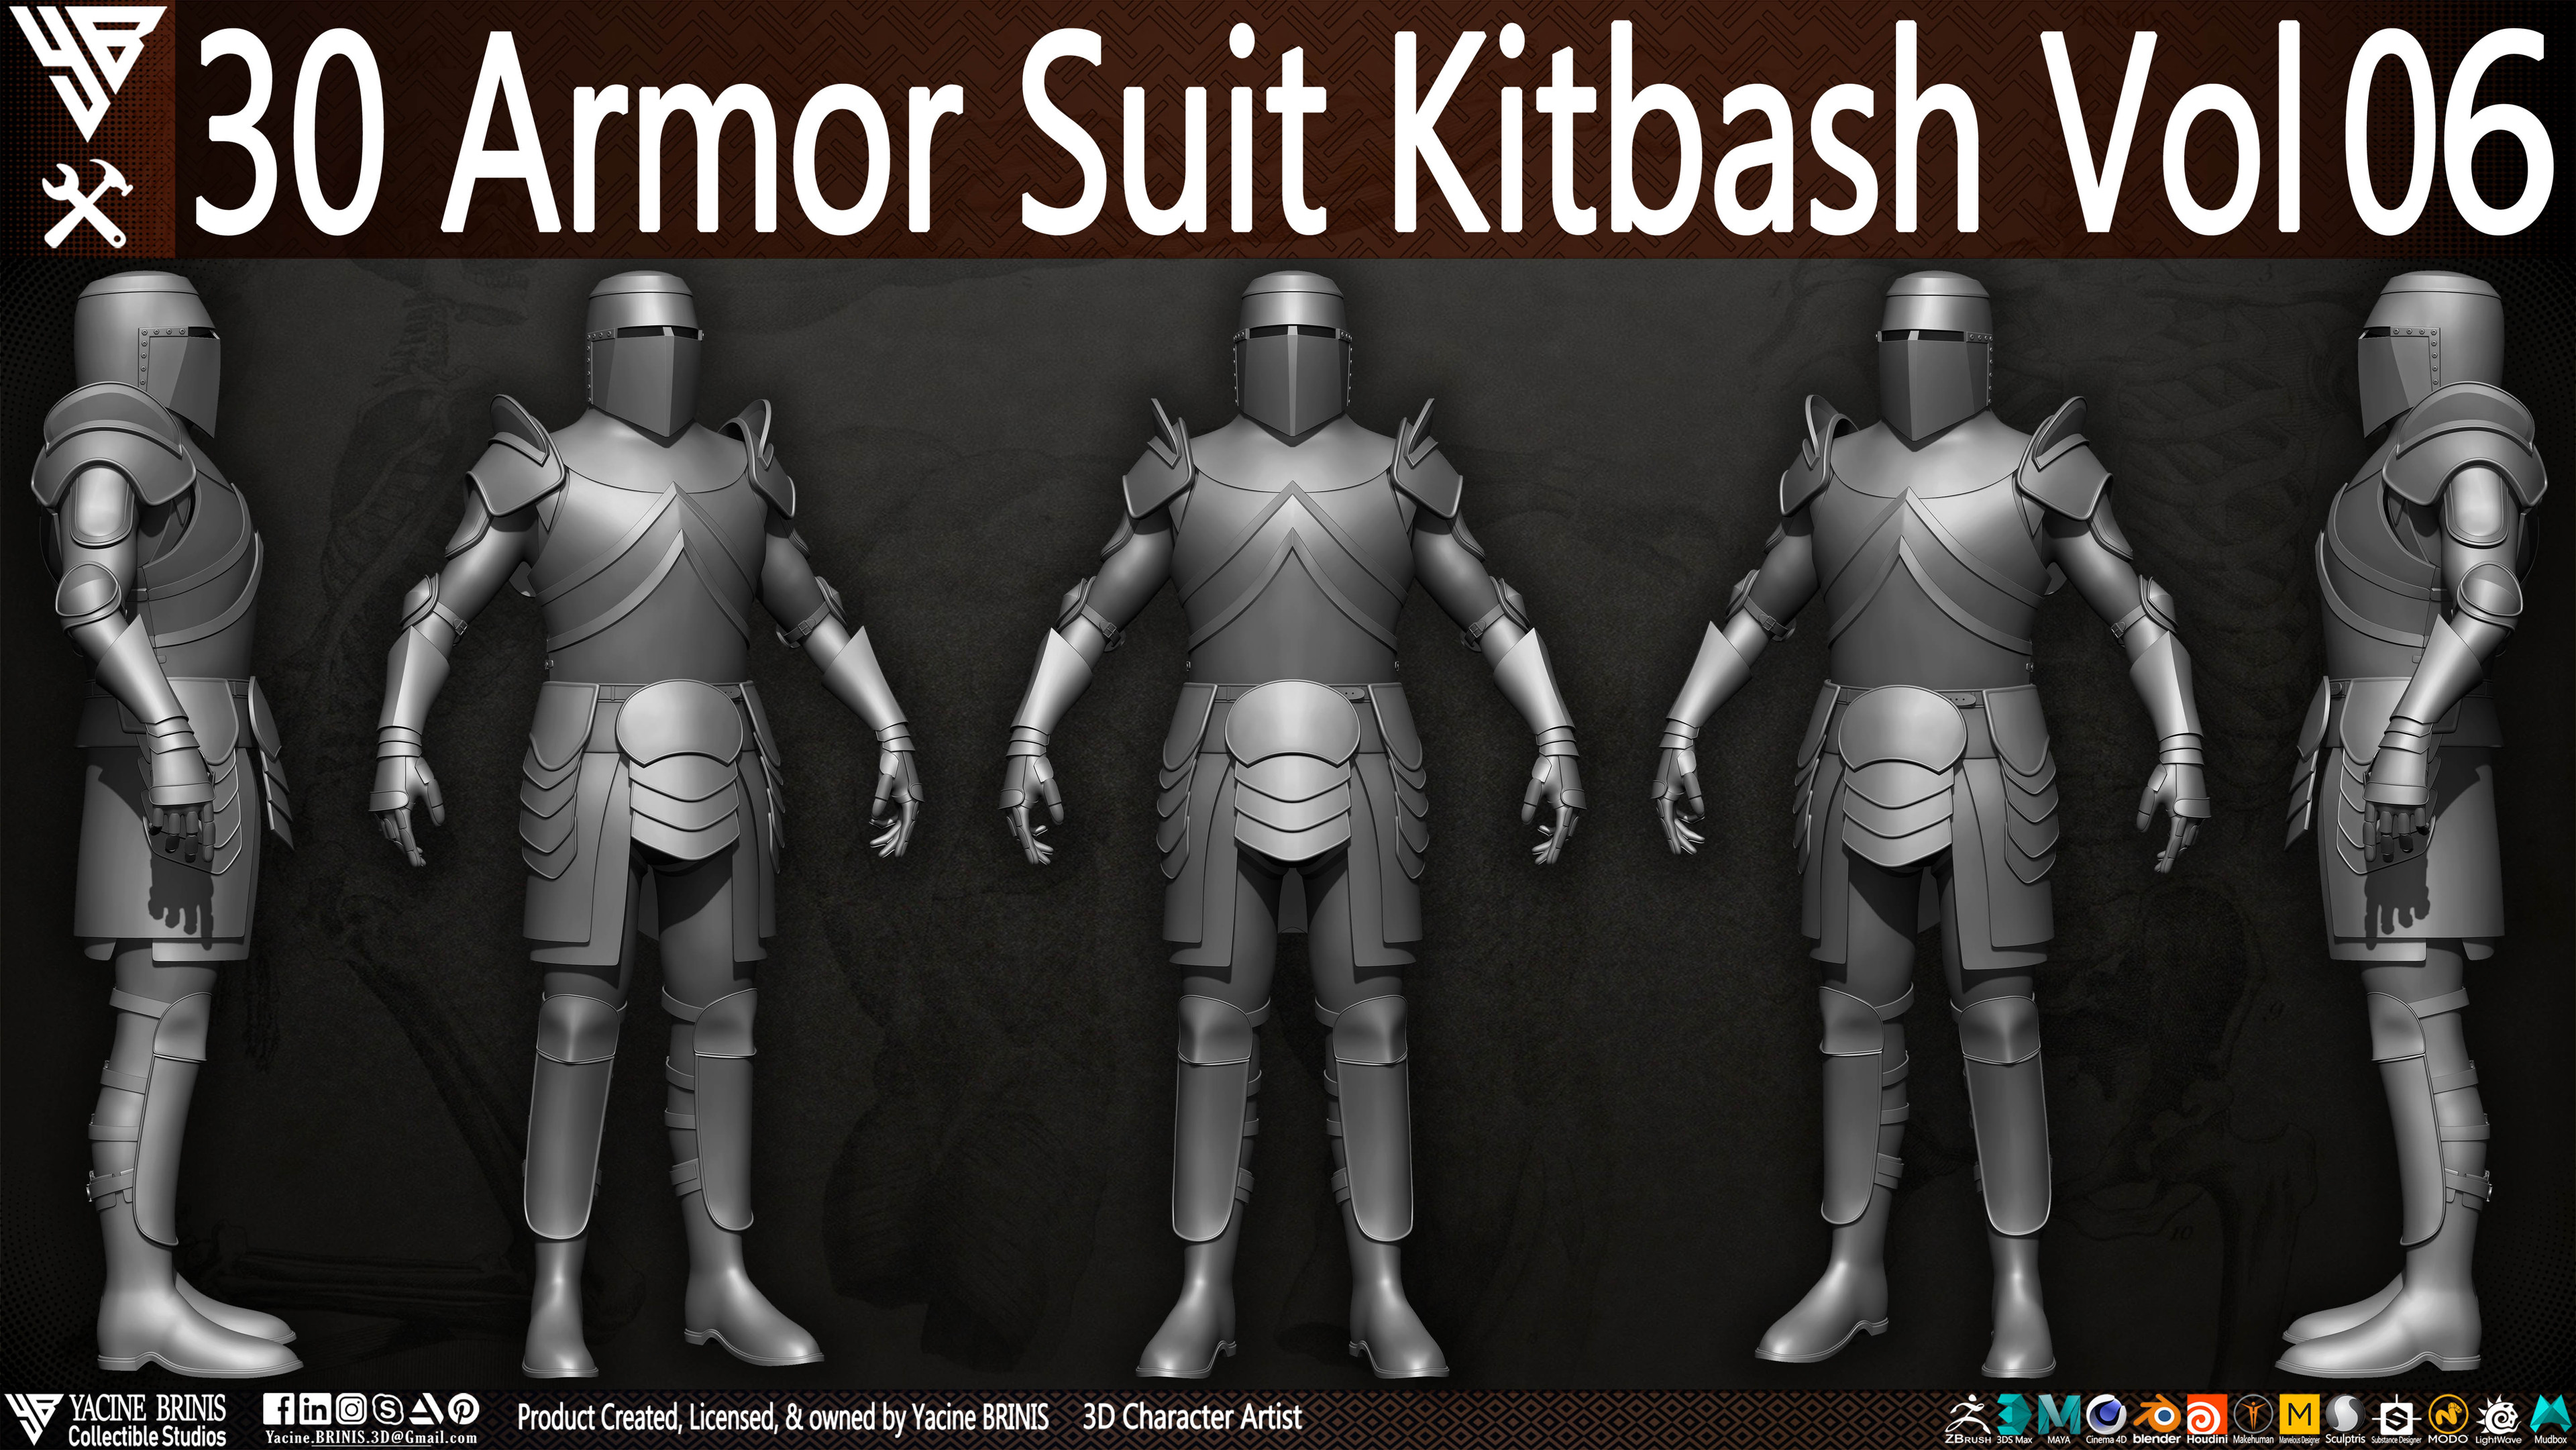 30 Armor Suit Kitbash By Yacine BRINIS Set 034